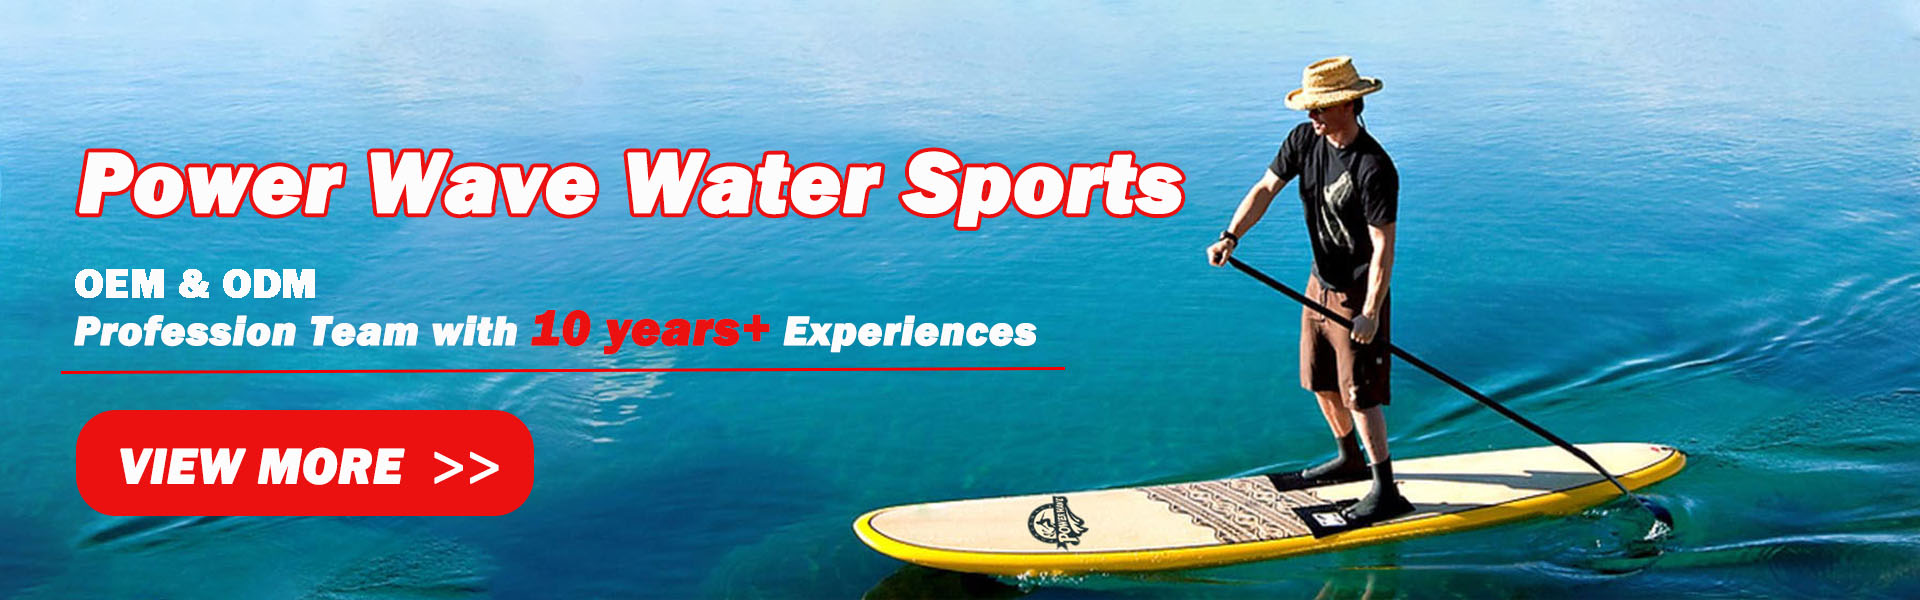 surfboard,soft board,sup,Power Wave Water Sports co.Ltd